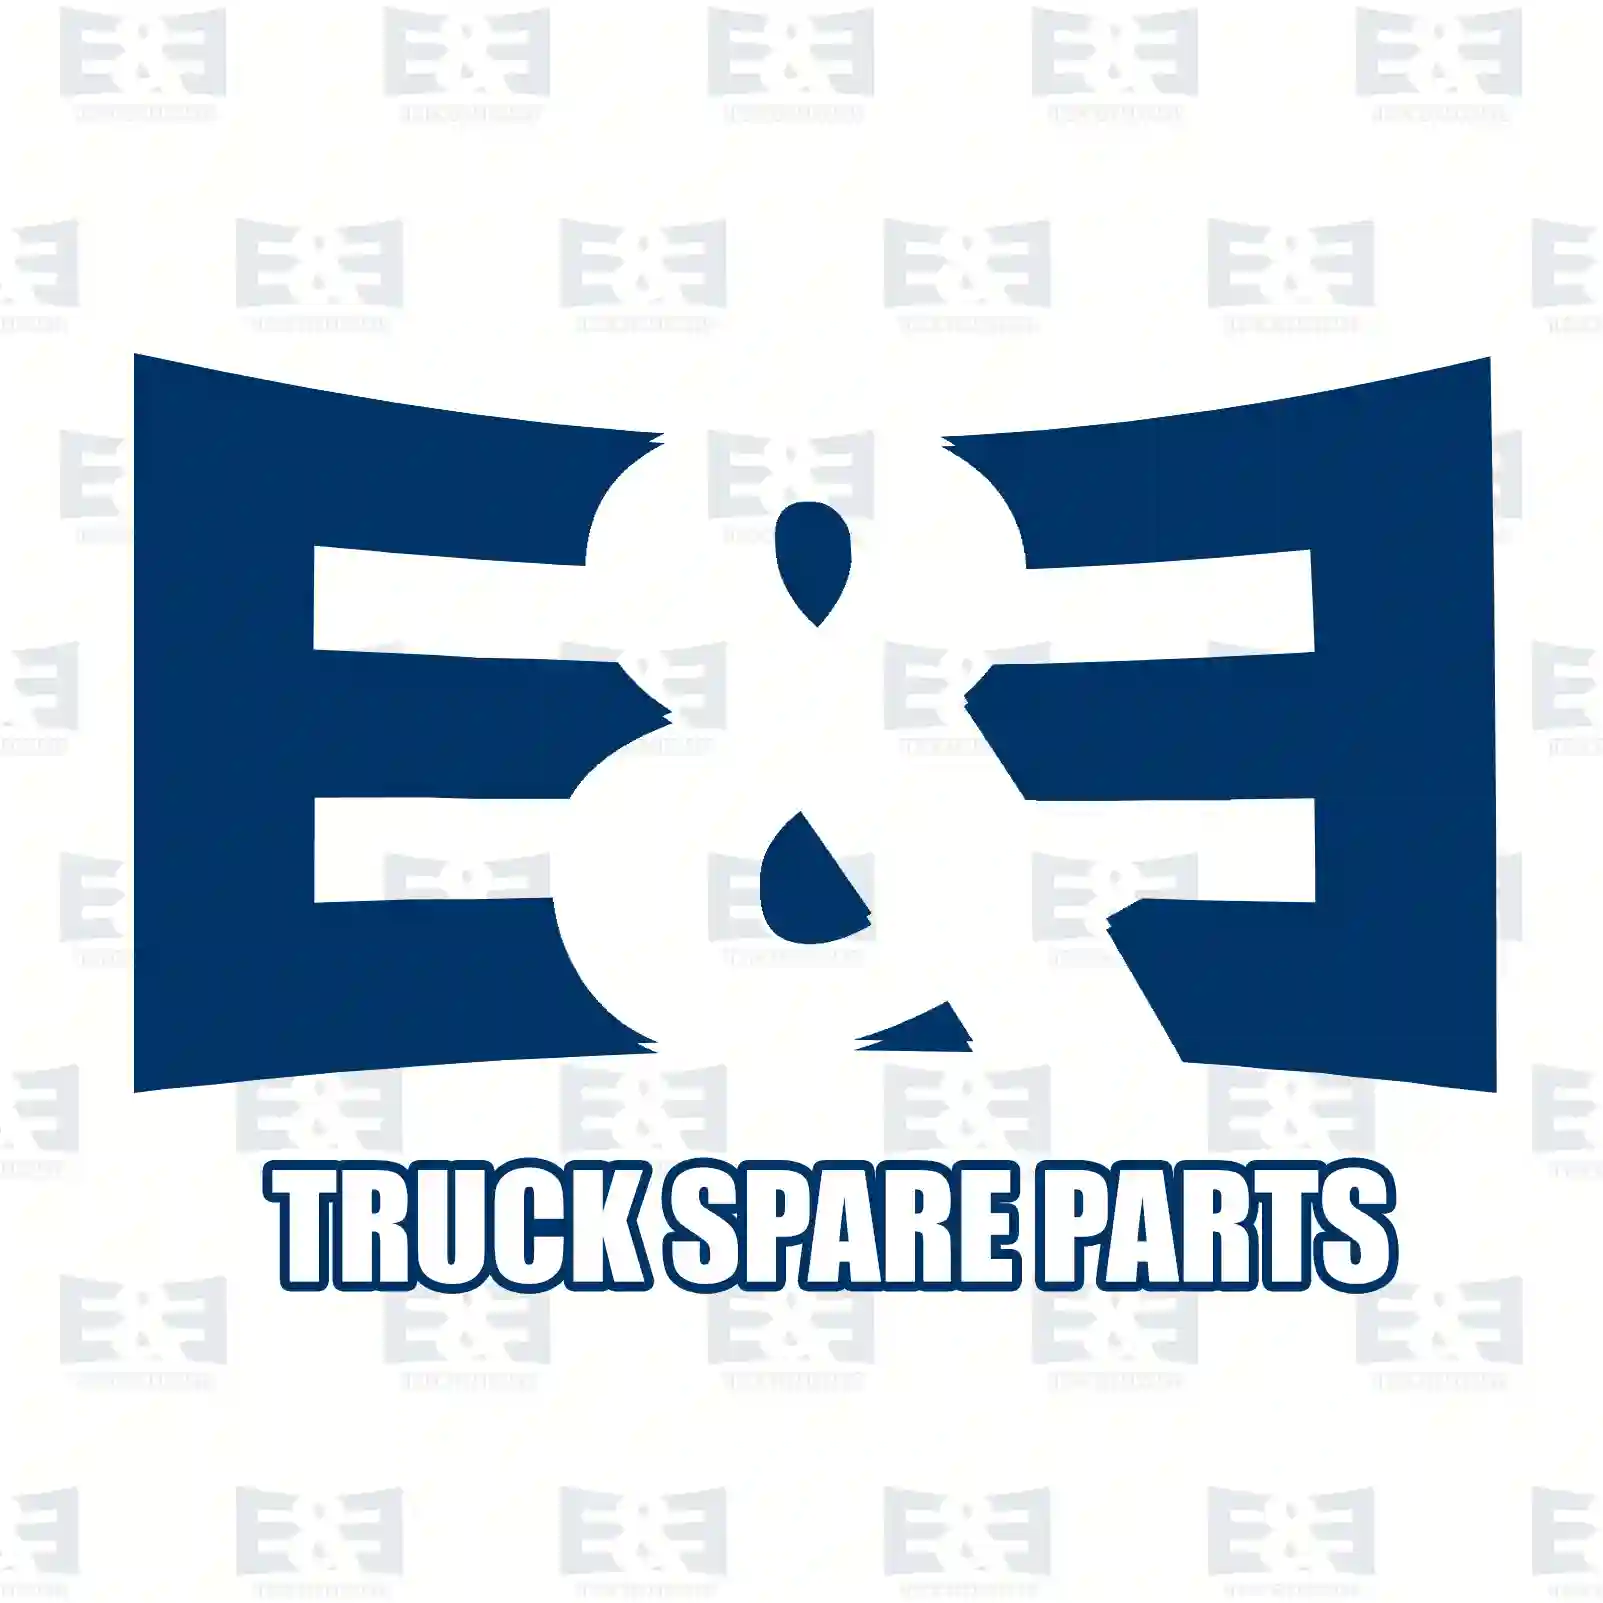 Shock absorber, 2E2283590, 0033239000, 0033260000, 0033261400, 0033261500, 0043263100, 0043263200, 0043266800, 0043266900, 0063266300, 3813266020, 3853260400, 6173260000, 6523200003, 6523200031 ||  2E2283590 E&E Truck Spare Parts | Truck Spare Parts, Auotomotive Spare Parts Shock absorber, 2E2283590, 0033239000, 0033260000, 0033261400, 0033261500, 0043263100, 0043263200, 0043266800, 0043266900, 0063266300, 3813266020, 3853260400, 6173260000, 6523200003, 6523200031 ||  2E2283590 E&E Truck Spare Parts | Truck Spare Parts, Auotomotive Spare Parts